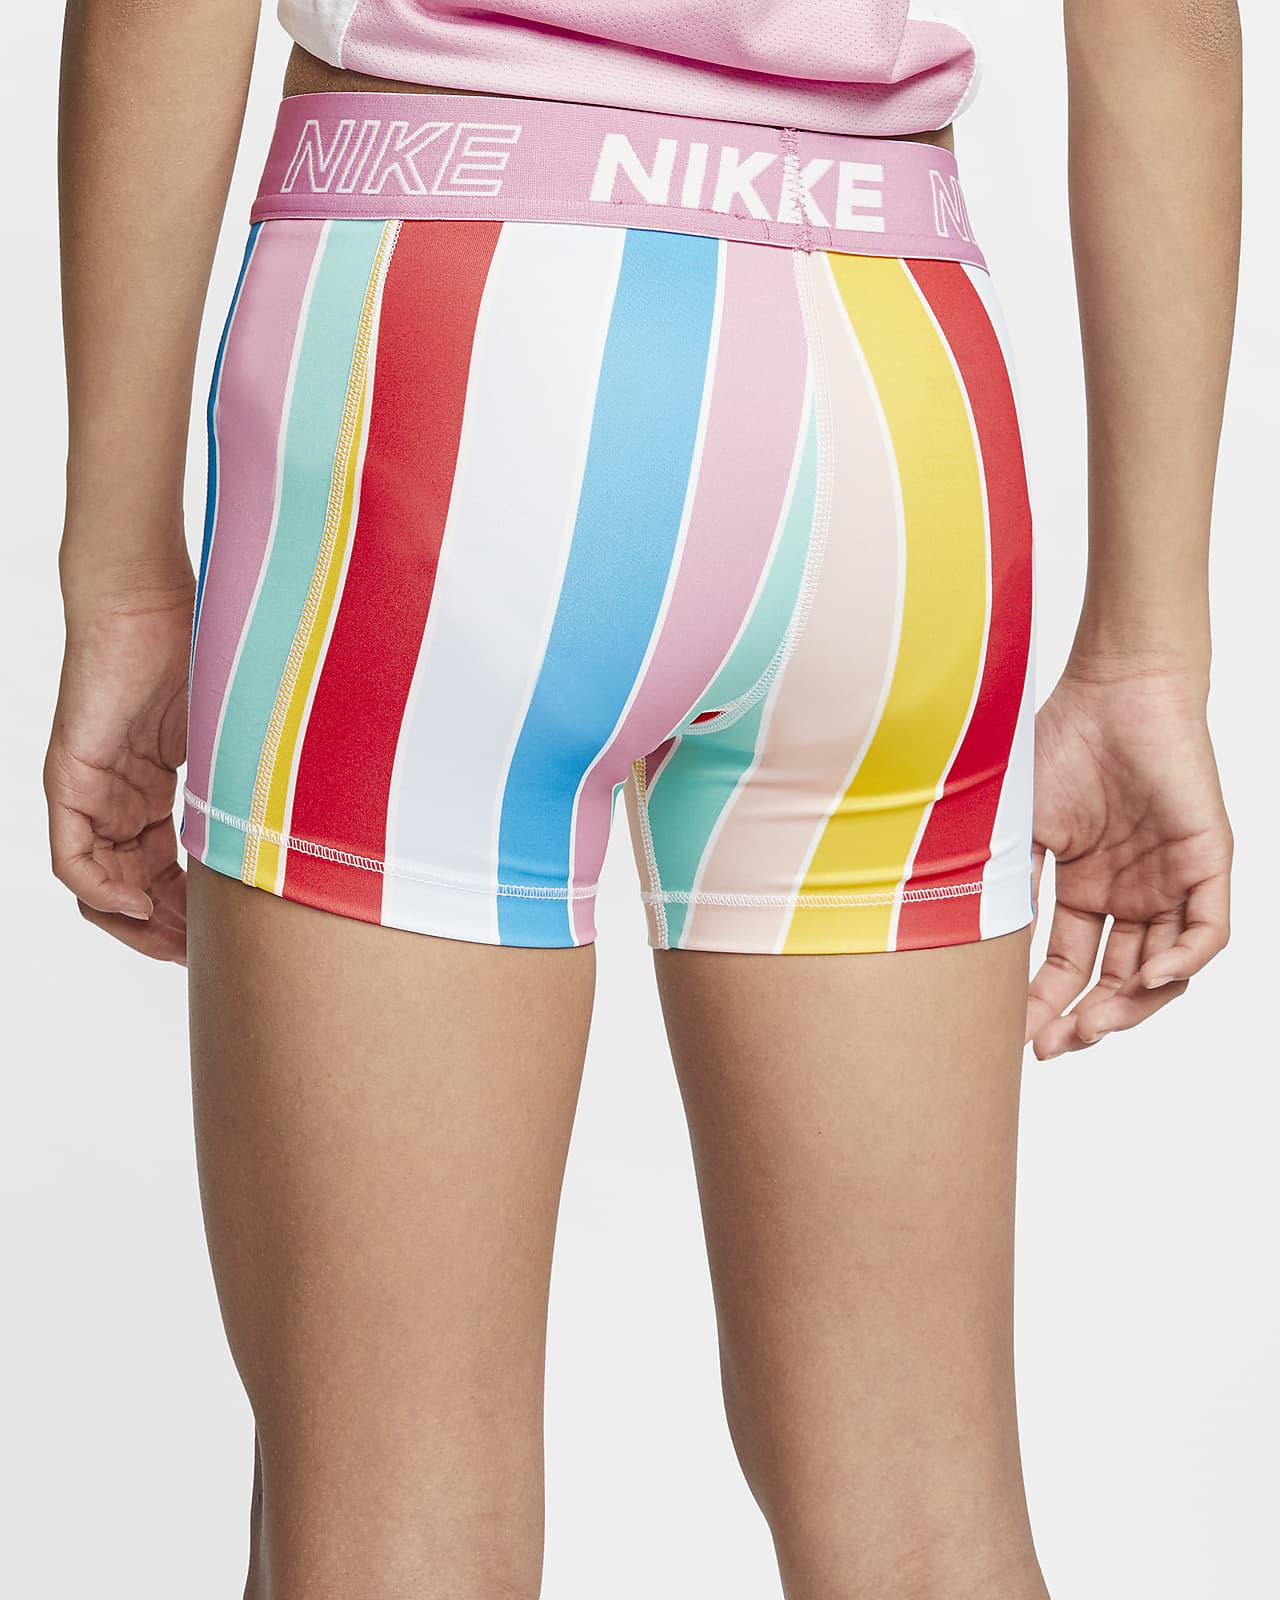 nike pro colorful shorts